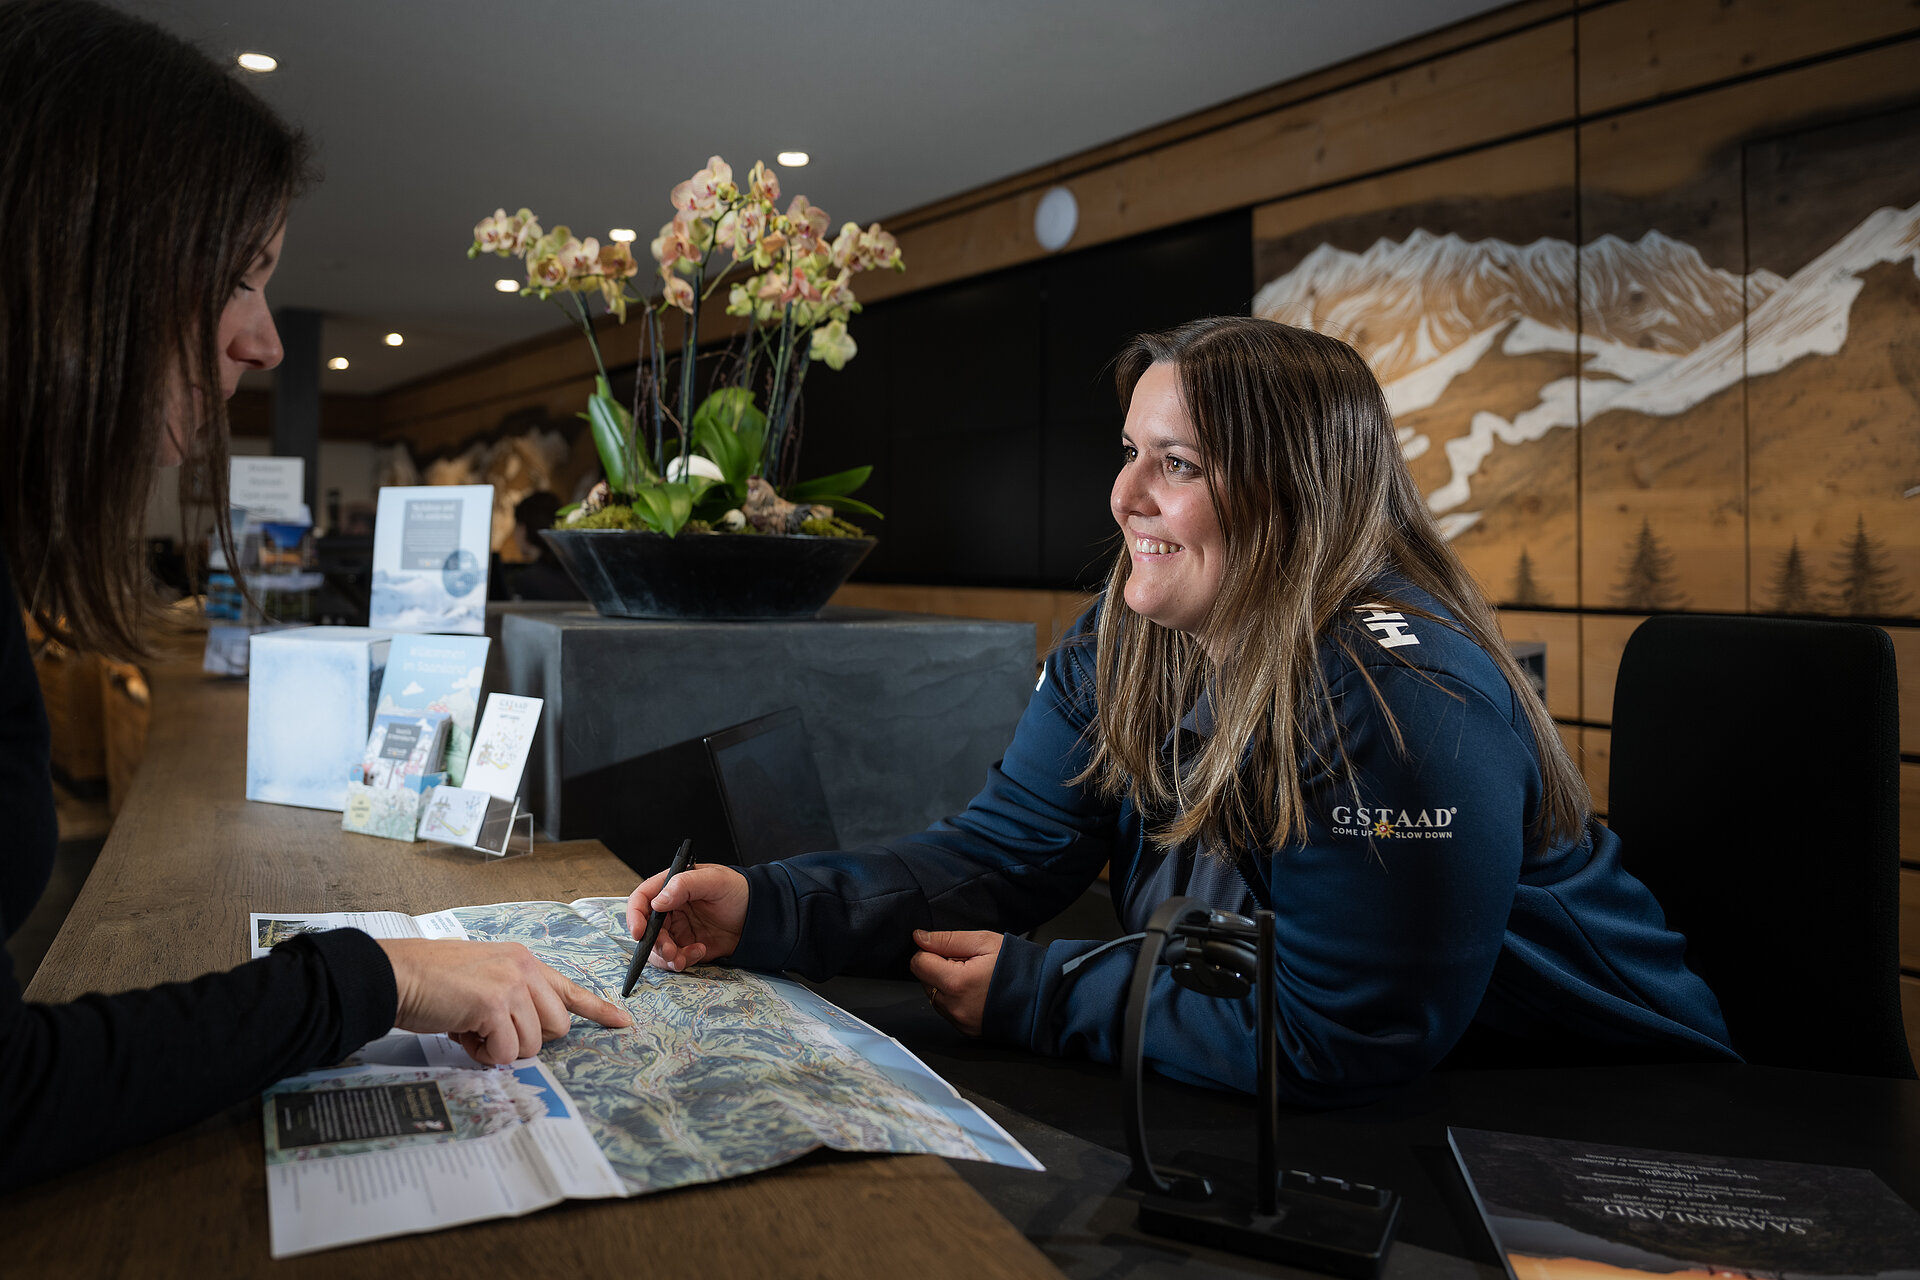 Eine Mitarbeiterin von Gstaad Saanenland Tourismus zeigt einem weiblichen Gast etwas auf einer Panoramakarte. Im Hintergrund die Schalter des Tourismusbüros Gstaad.